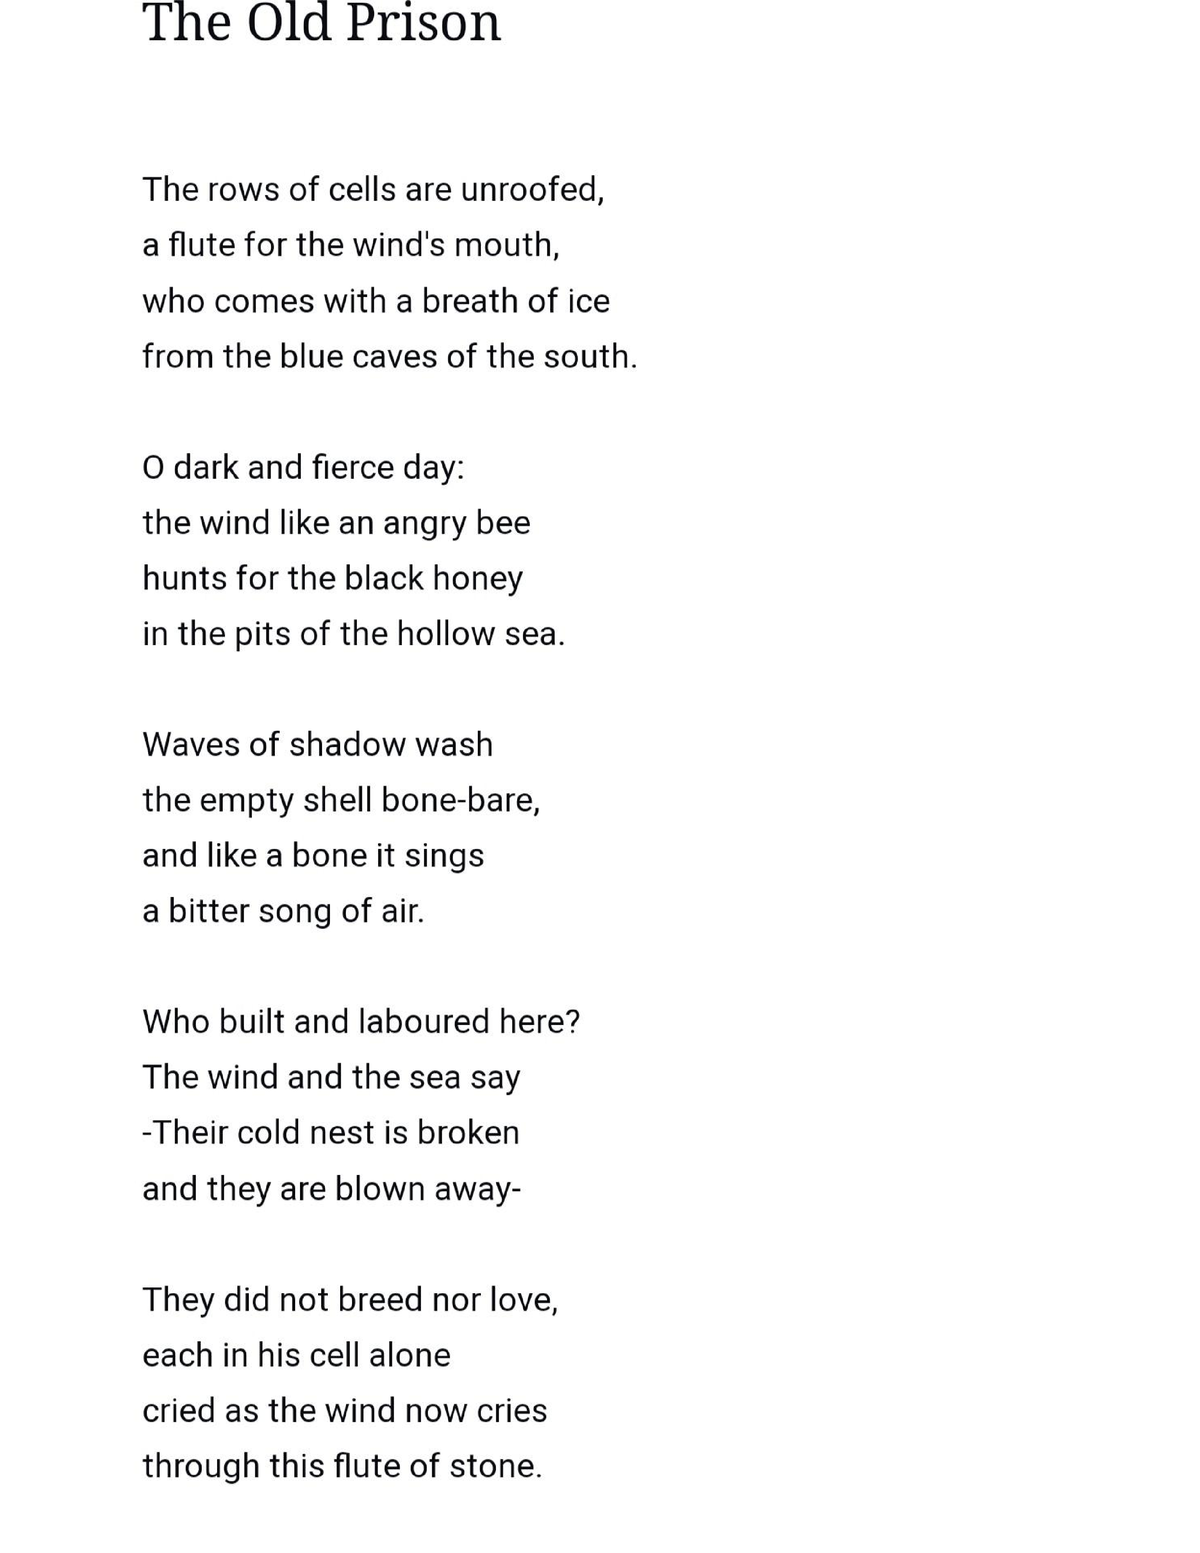 The old prison poem - Poem lyrics for reading. - B.com finance and ...